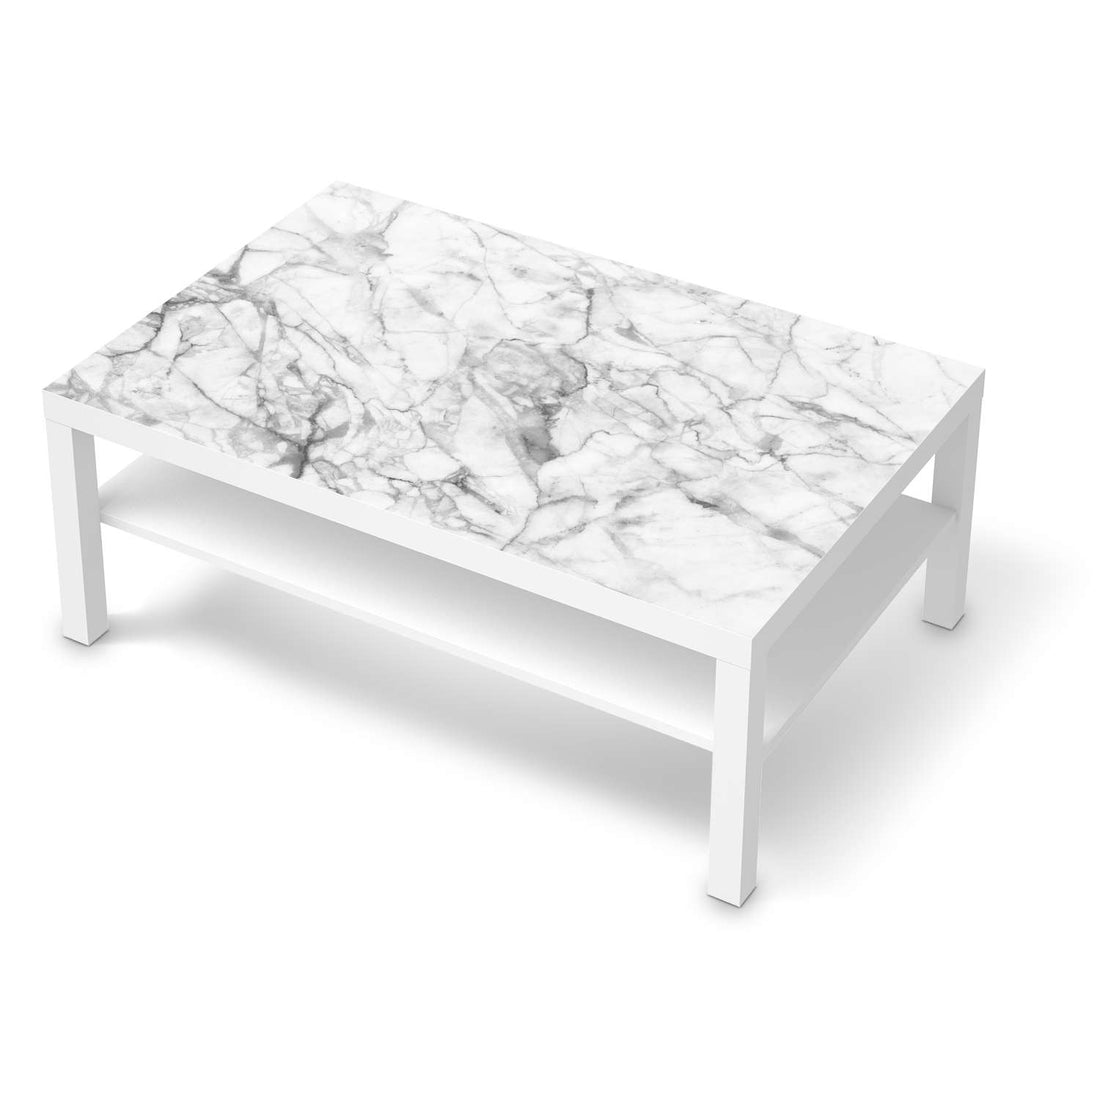 Klebefolie IKEA Lack Tisch 118x78 cm - Design: Marmor weiß